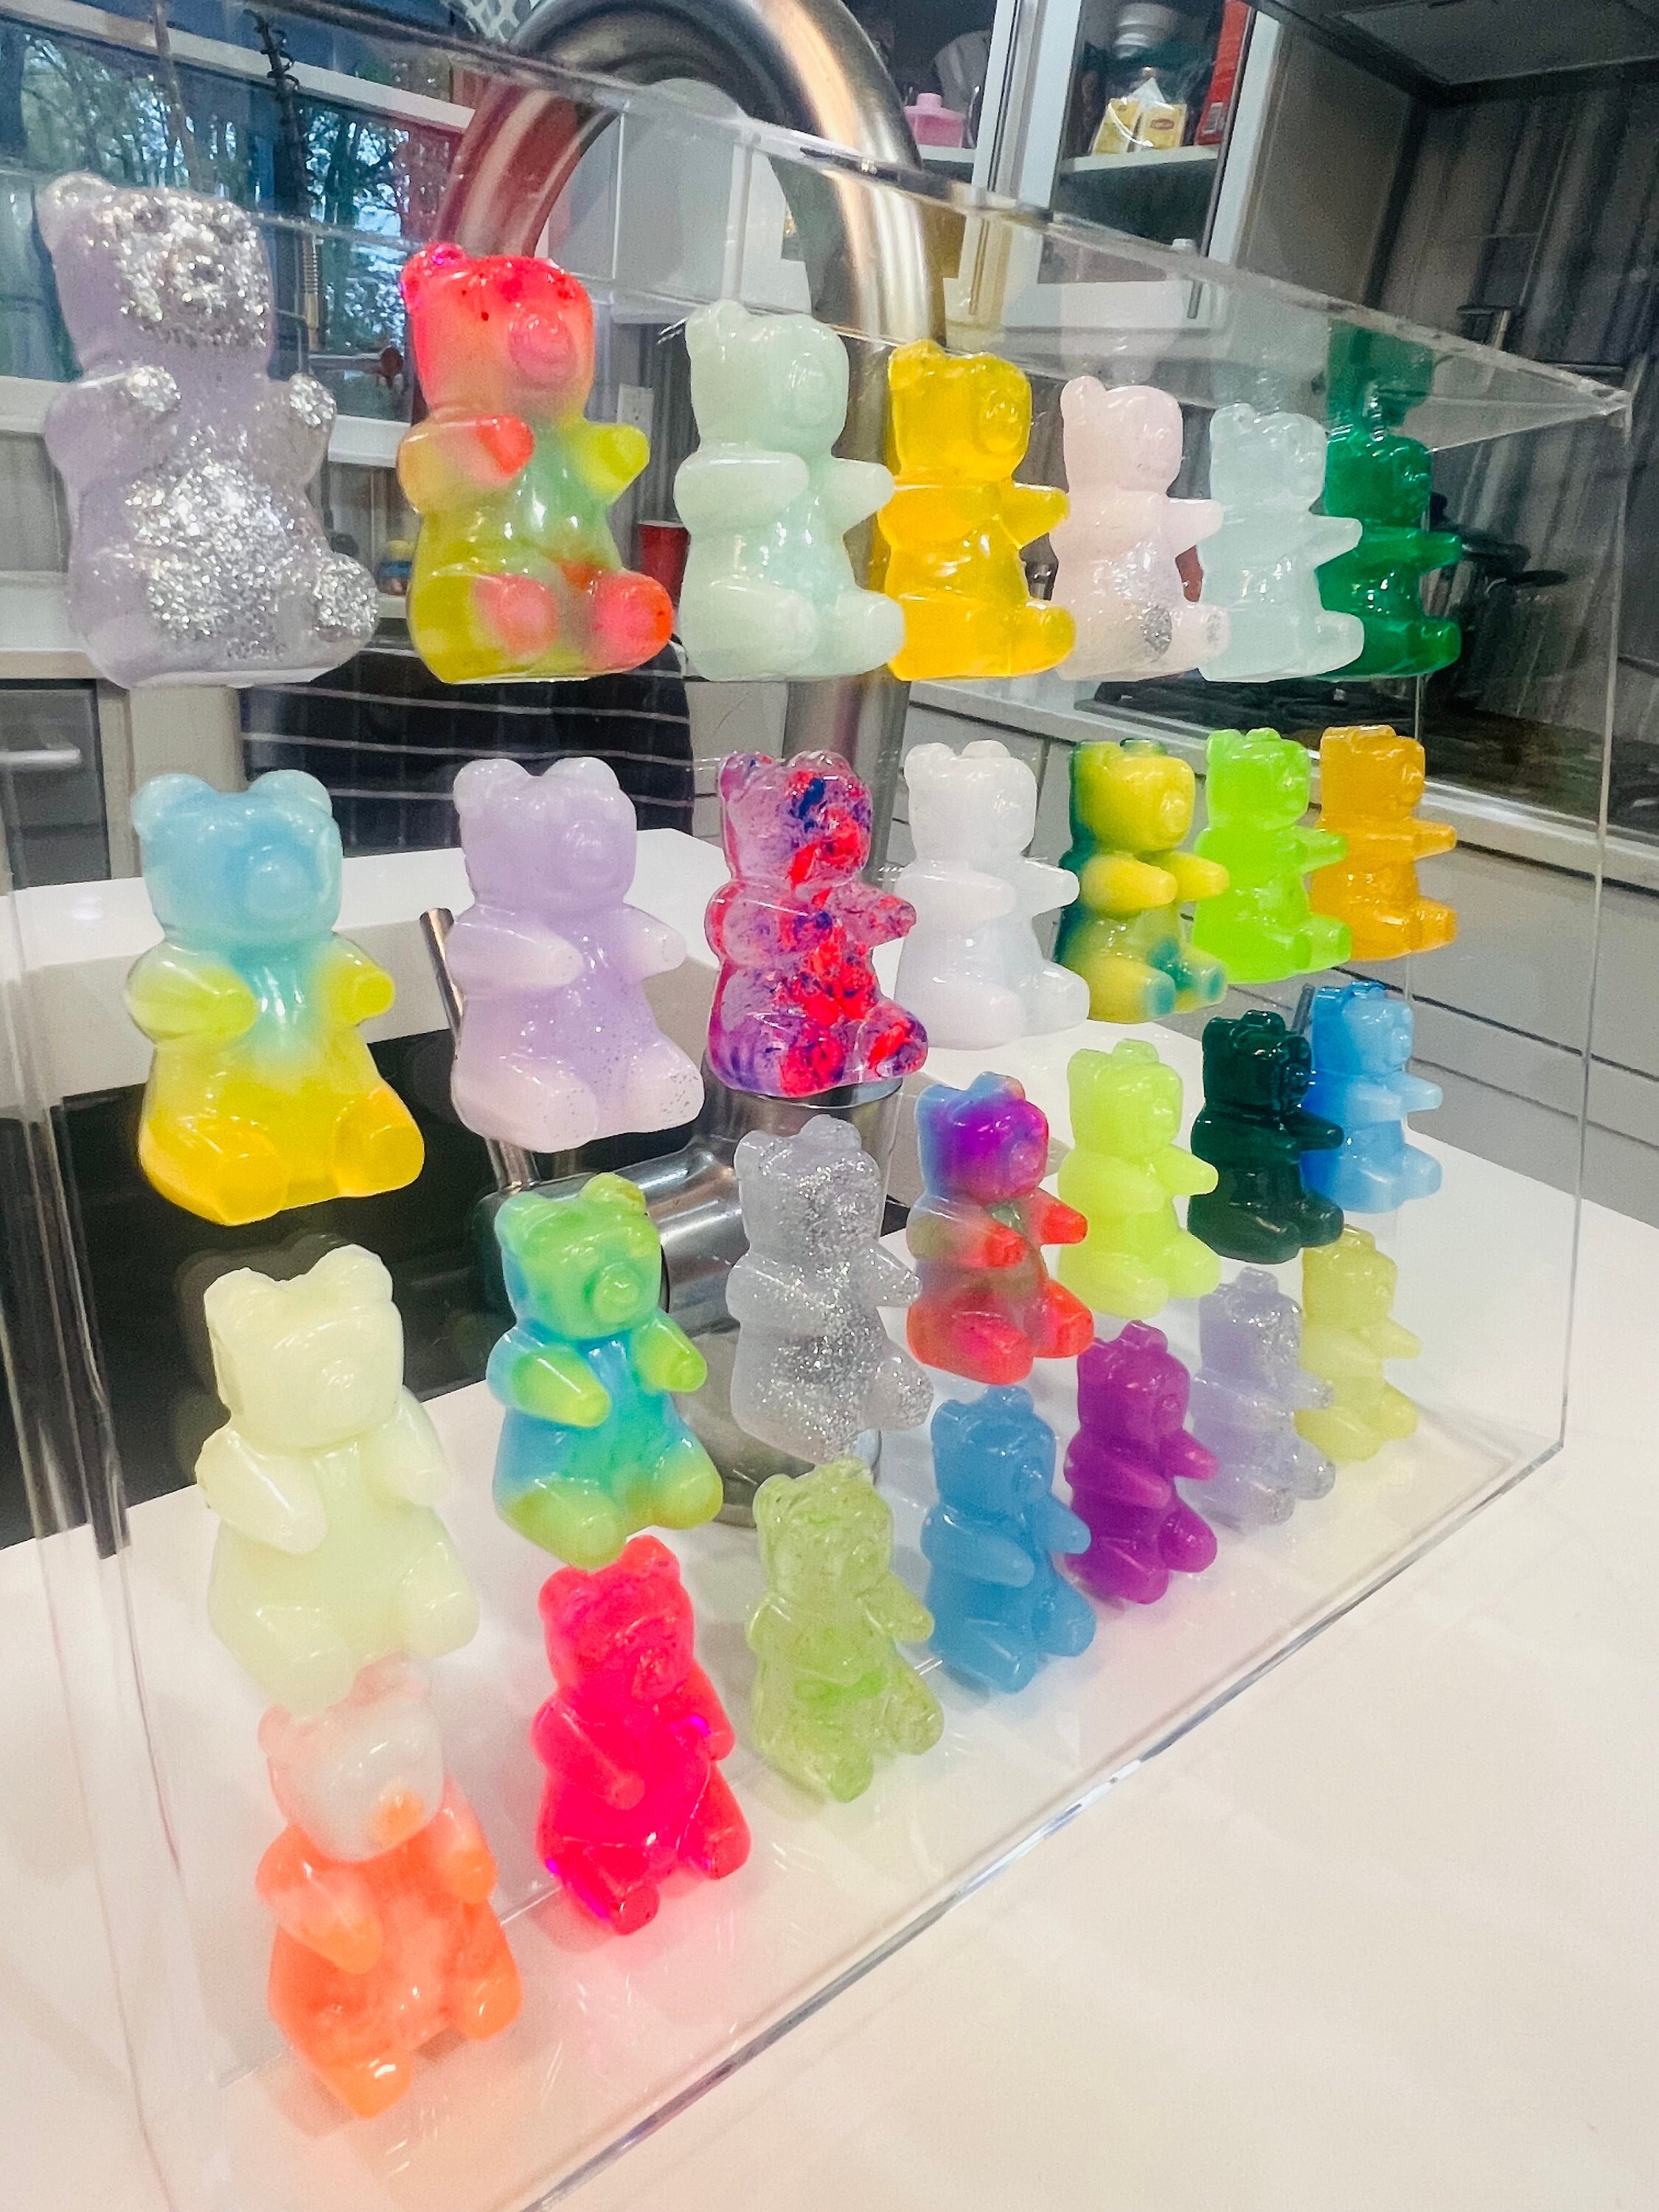 Candy Gummy Bear Resin 3D Nail Art / 2pcs